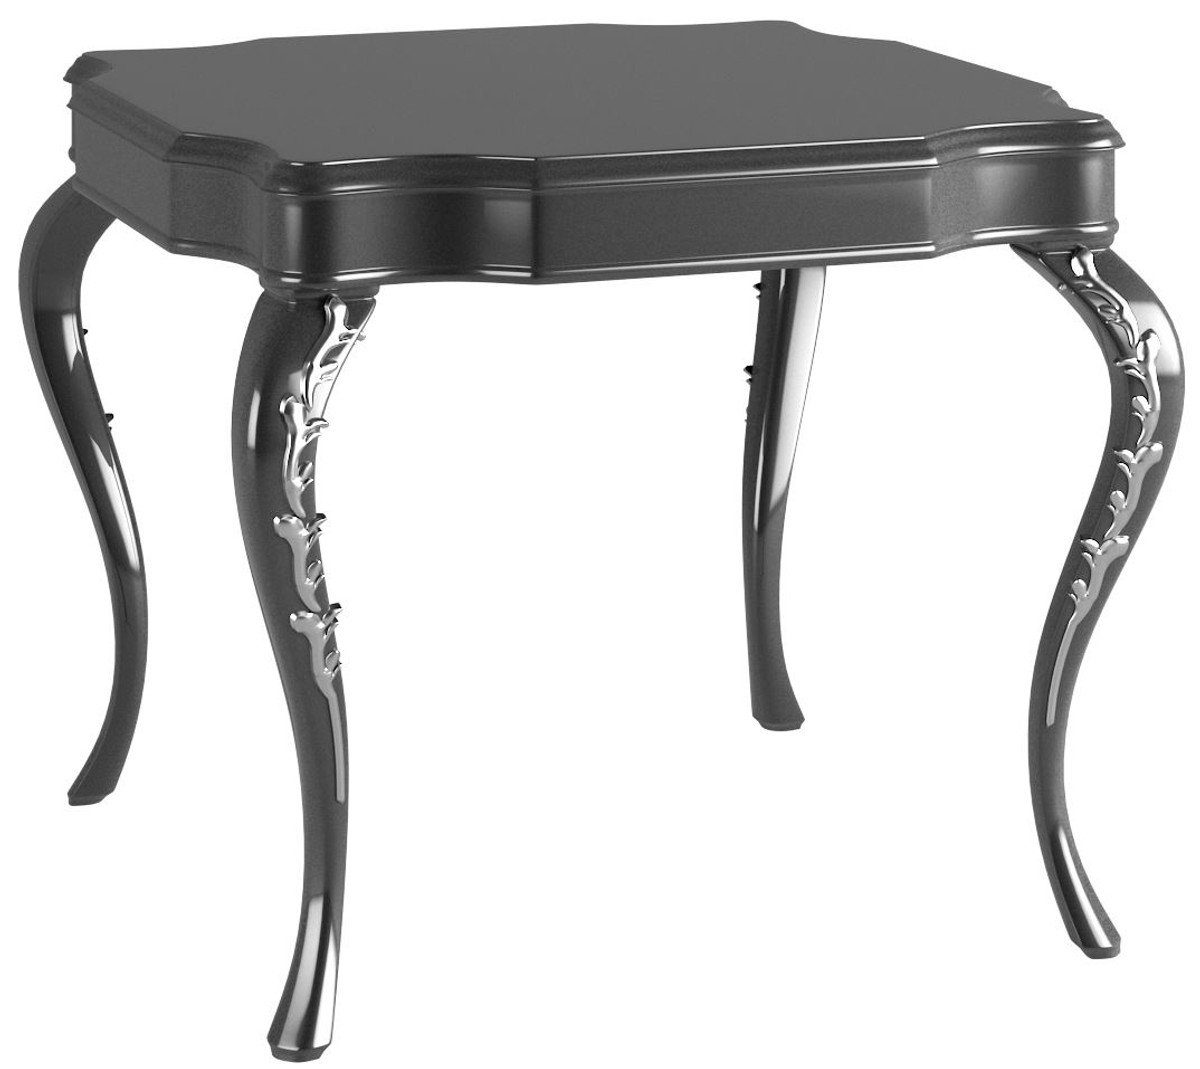 Casa Padrino Beistelltisch Luxus Barock Beistelltisch Schwarz / Silber 63 x 63 x H. 62 cm - Edler Tisch im Barockstil - Barock Möbel